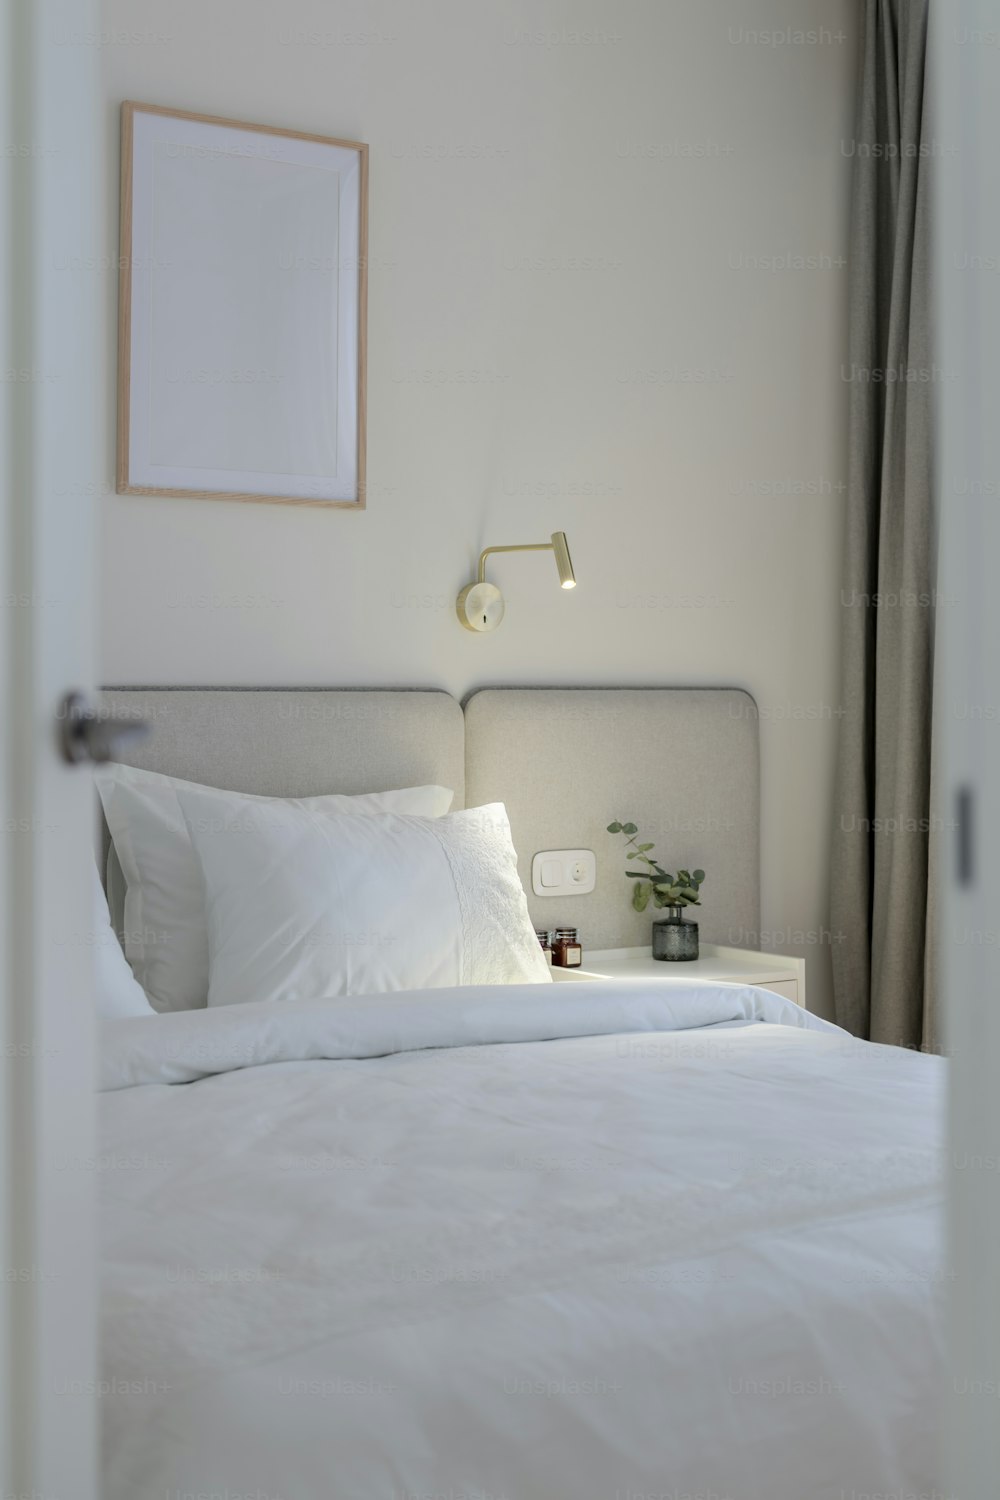 흰색 시트와 베개가 있는 흰색 침대